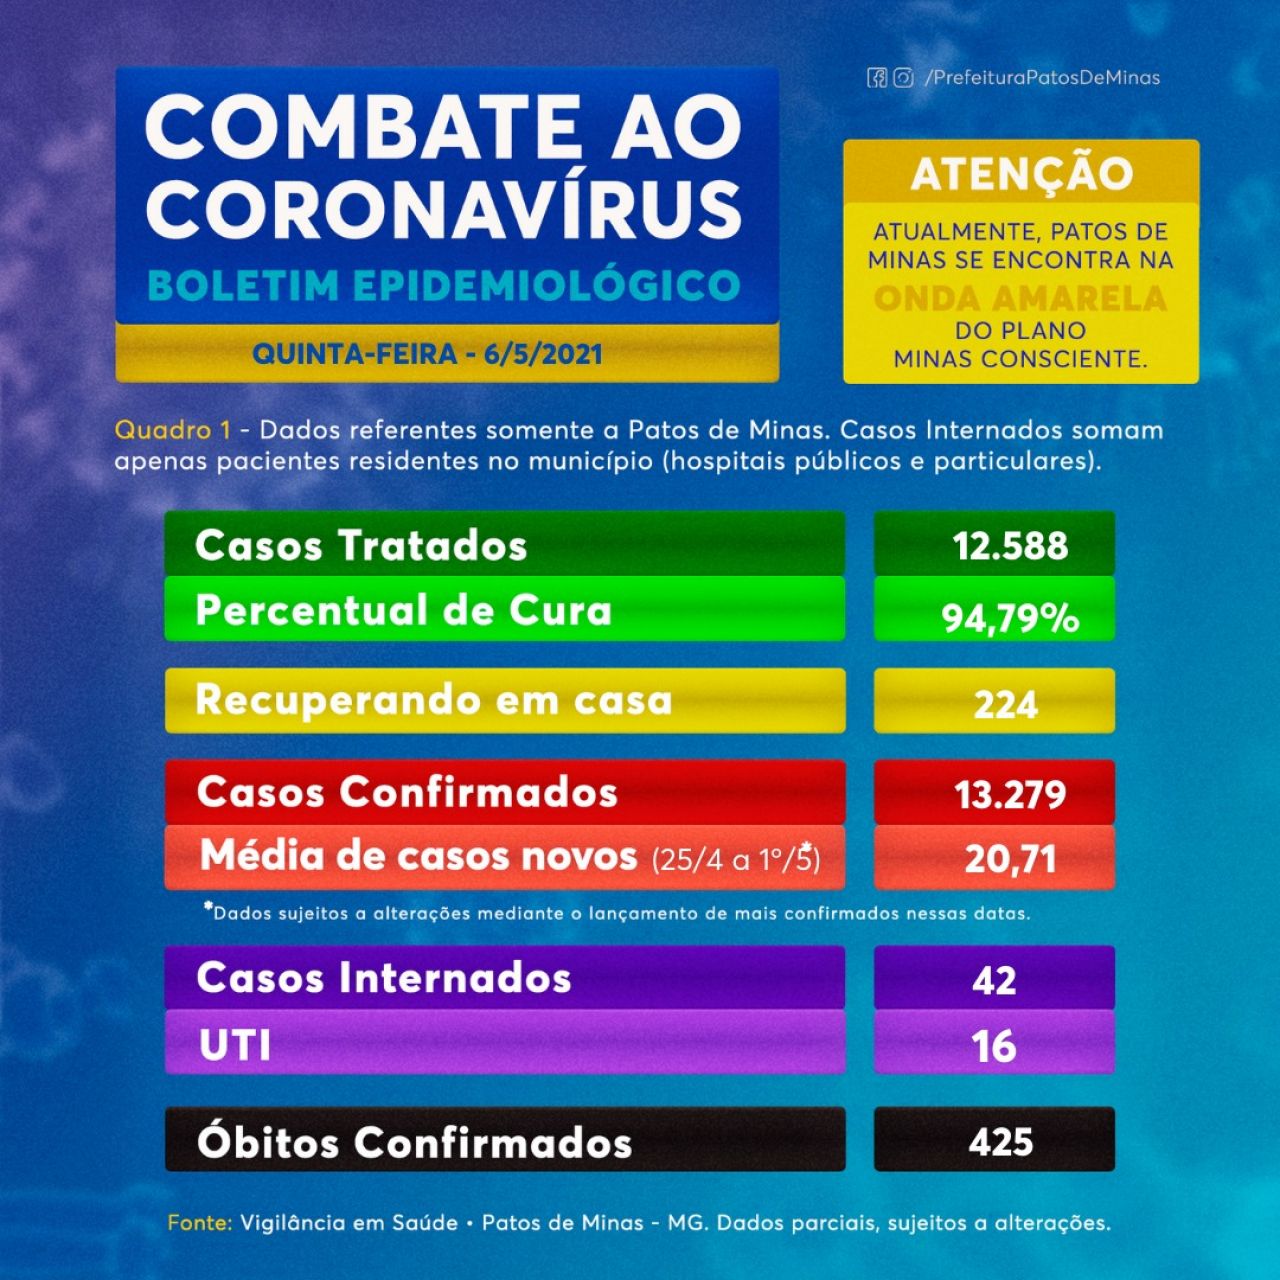 Covid-19: Patos de Minas registra 20 novos casos e 1 óbito confirmado